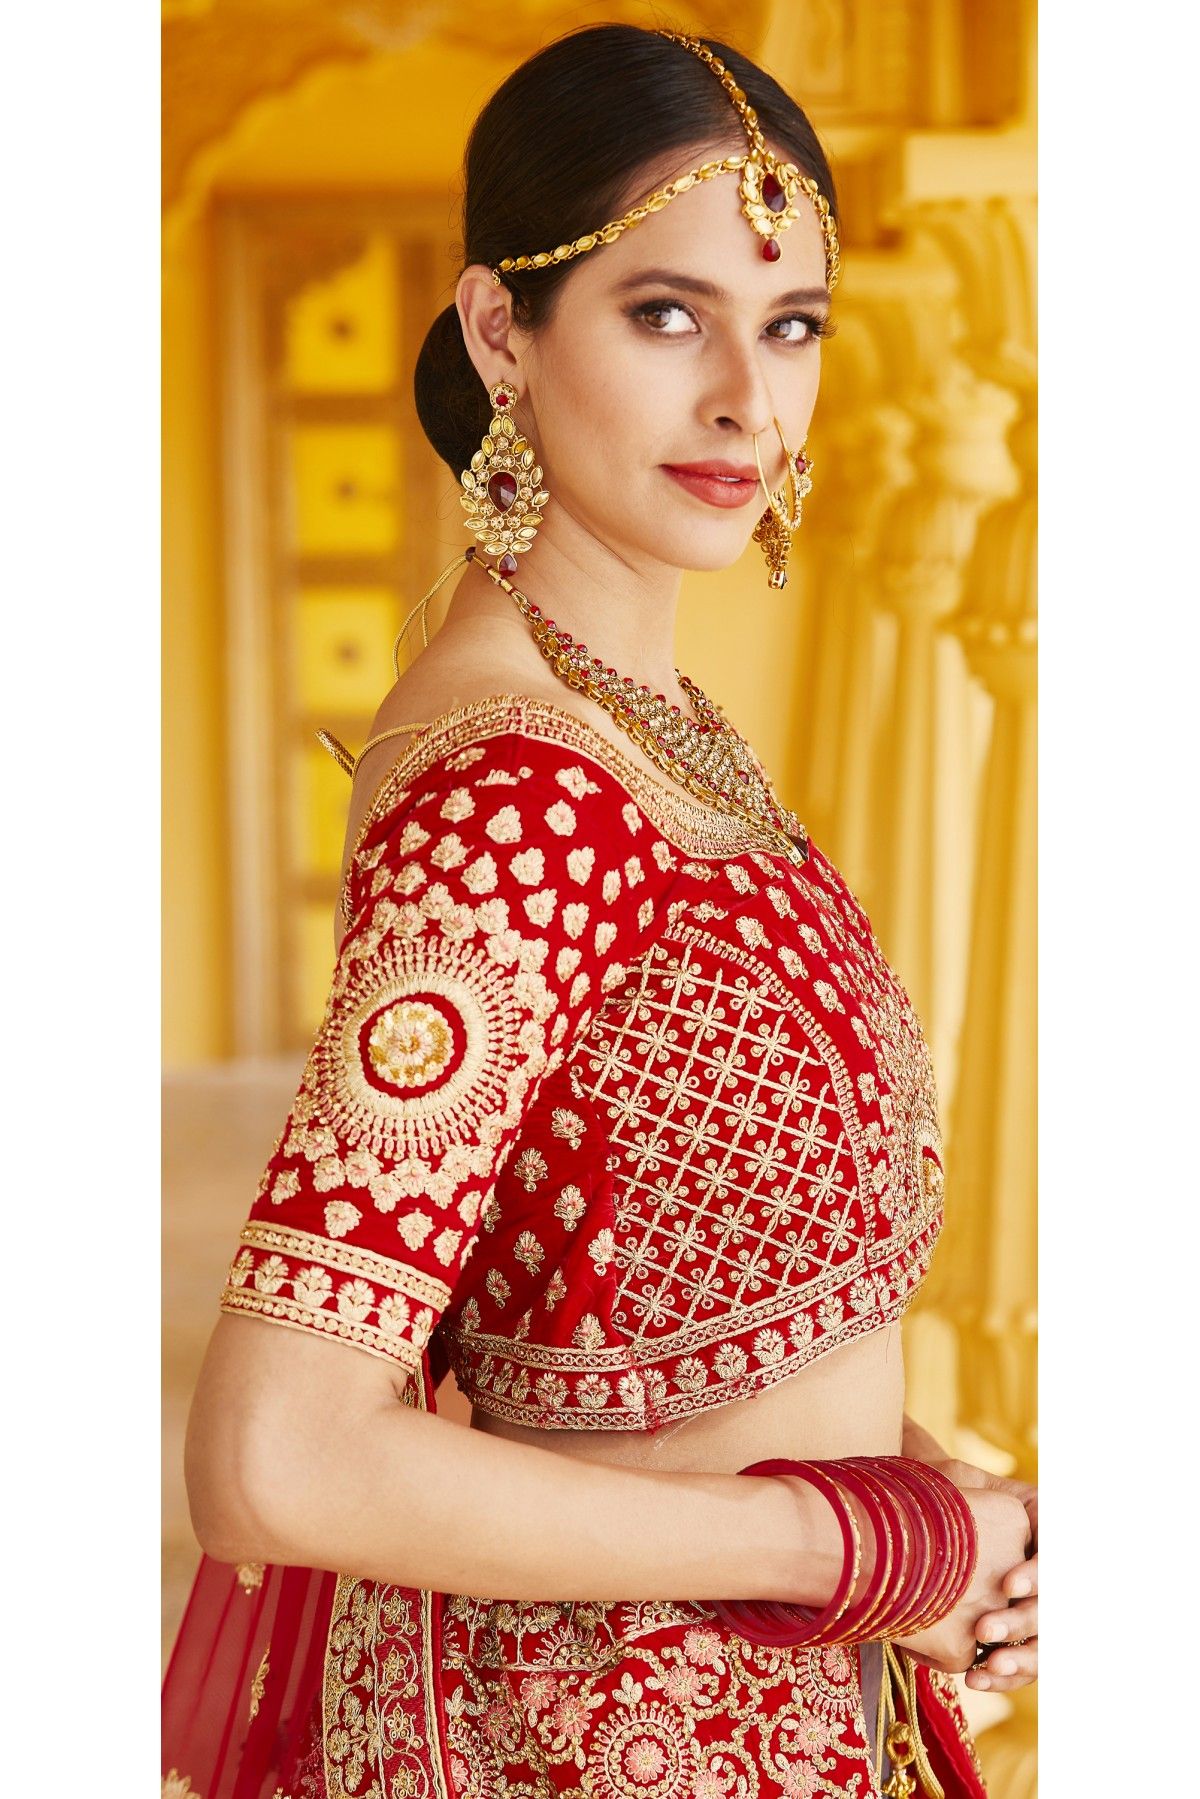 Buy Red Flower Applique Work Net Lehenga Choli Online At Zeel Clothing